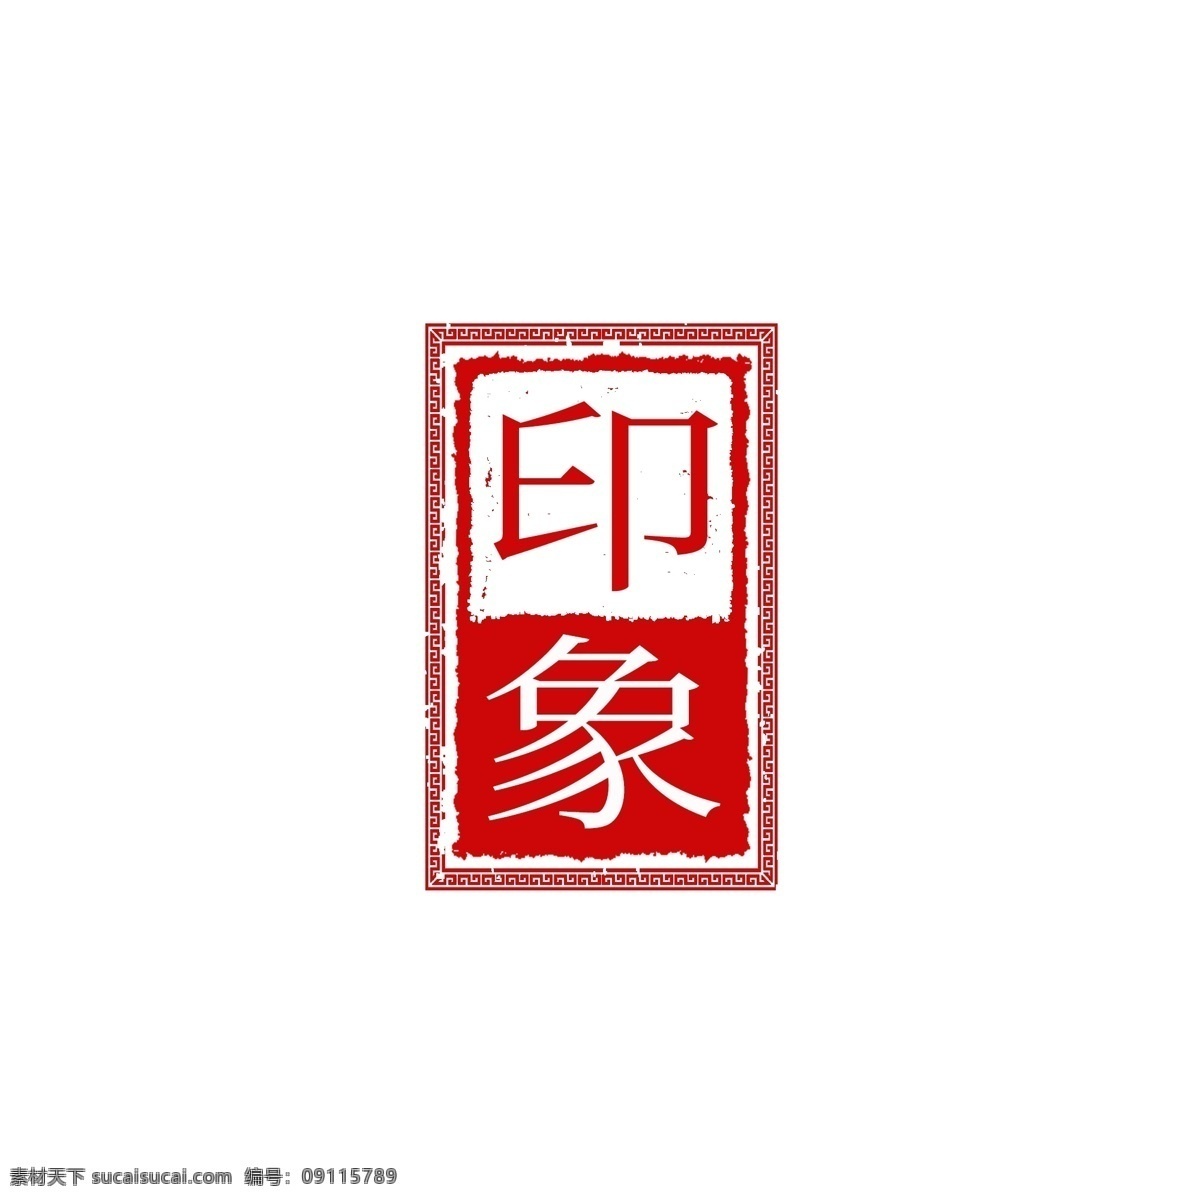 中国 风 古典 篆刻 印章 图案 中国风 篆刻印章 可商用元素